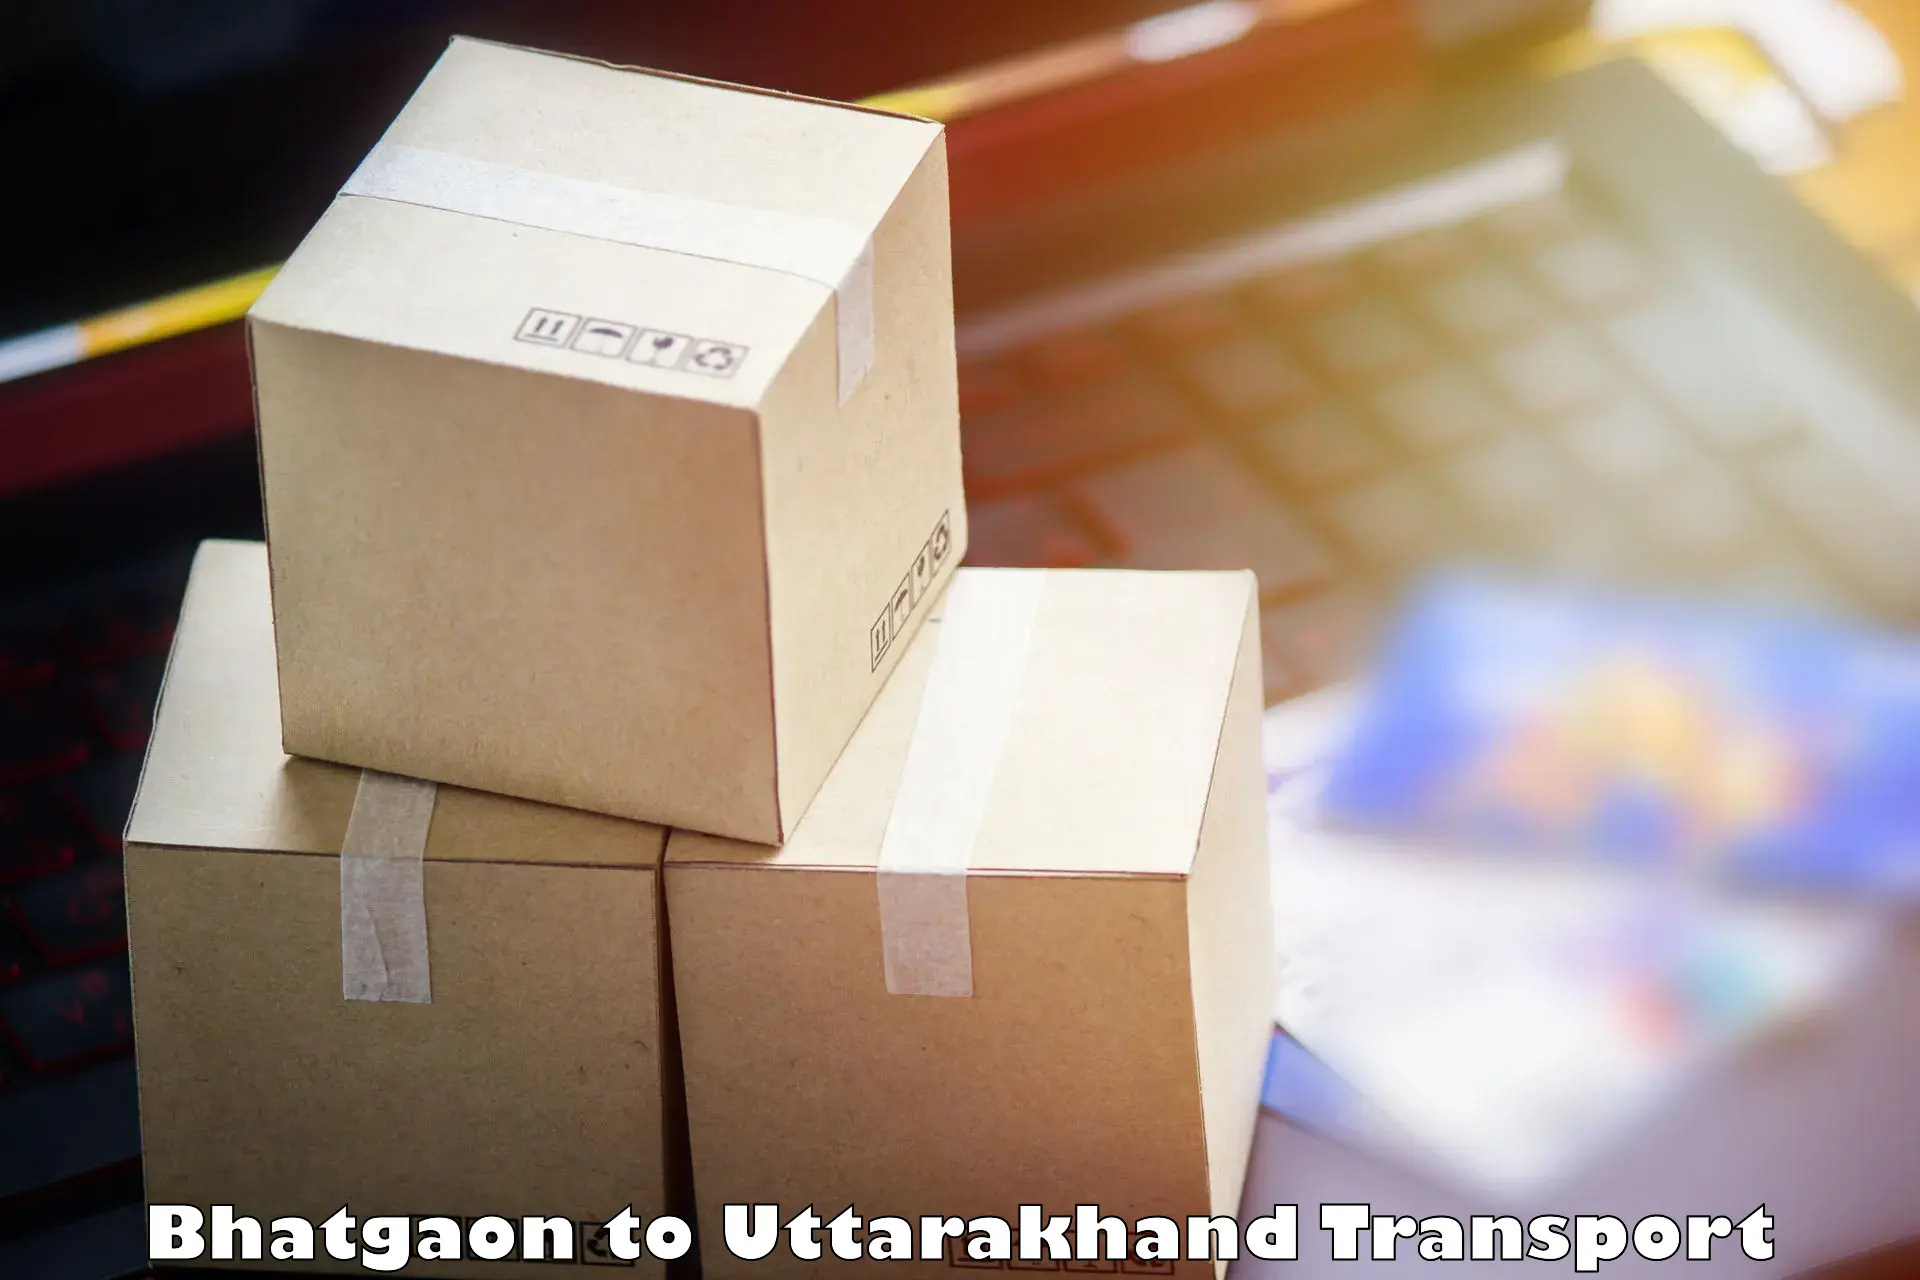 Furniture transport service Bhatgaon to Kotdwara